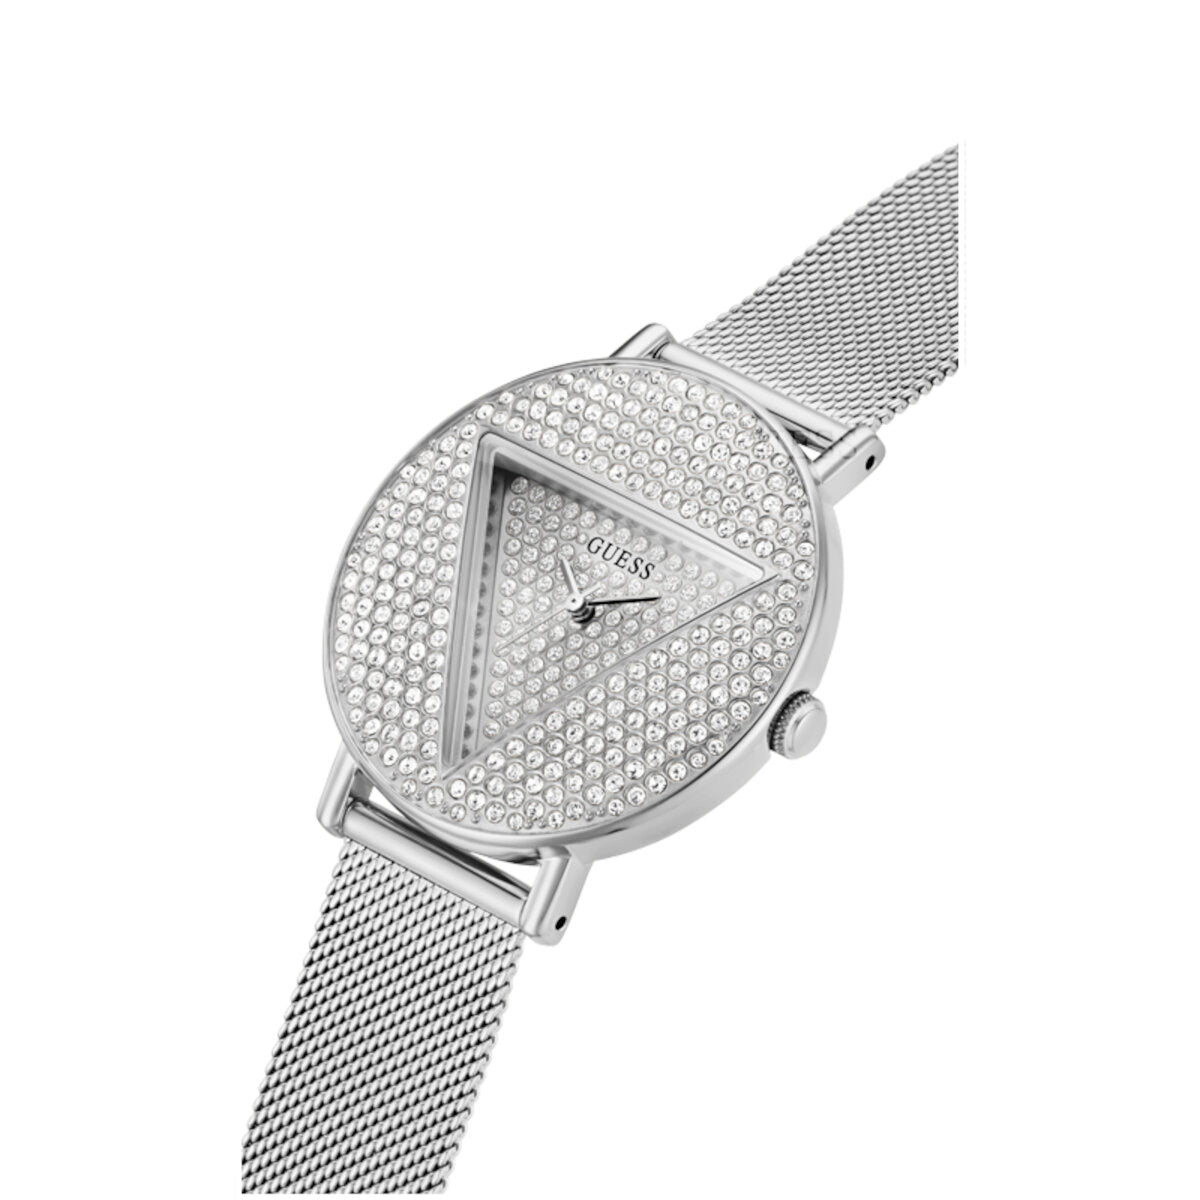 Reloj Guess de mujer Iconic color plata